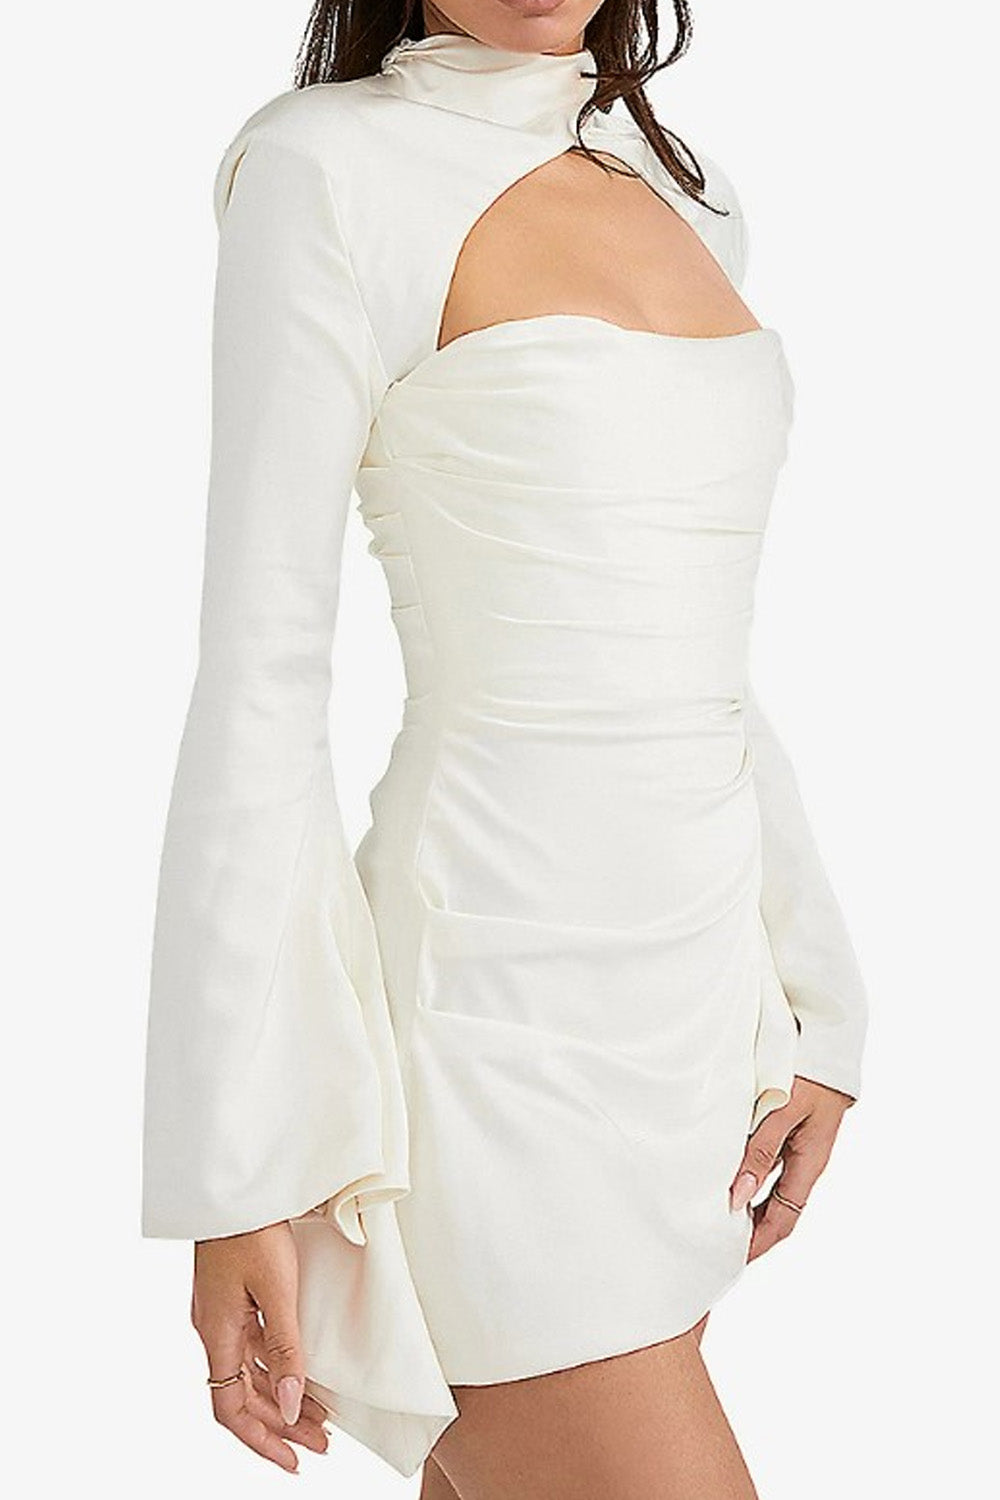 Labyrinth White Dress – Styched Fashion